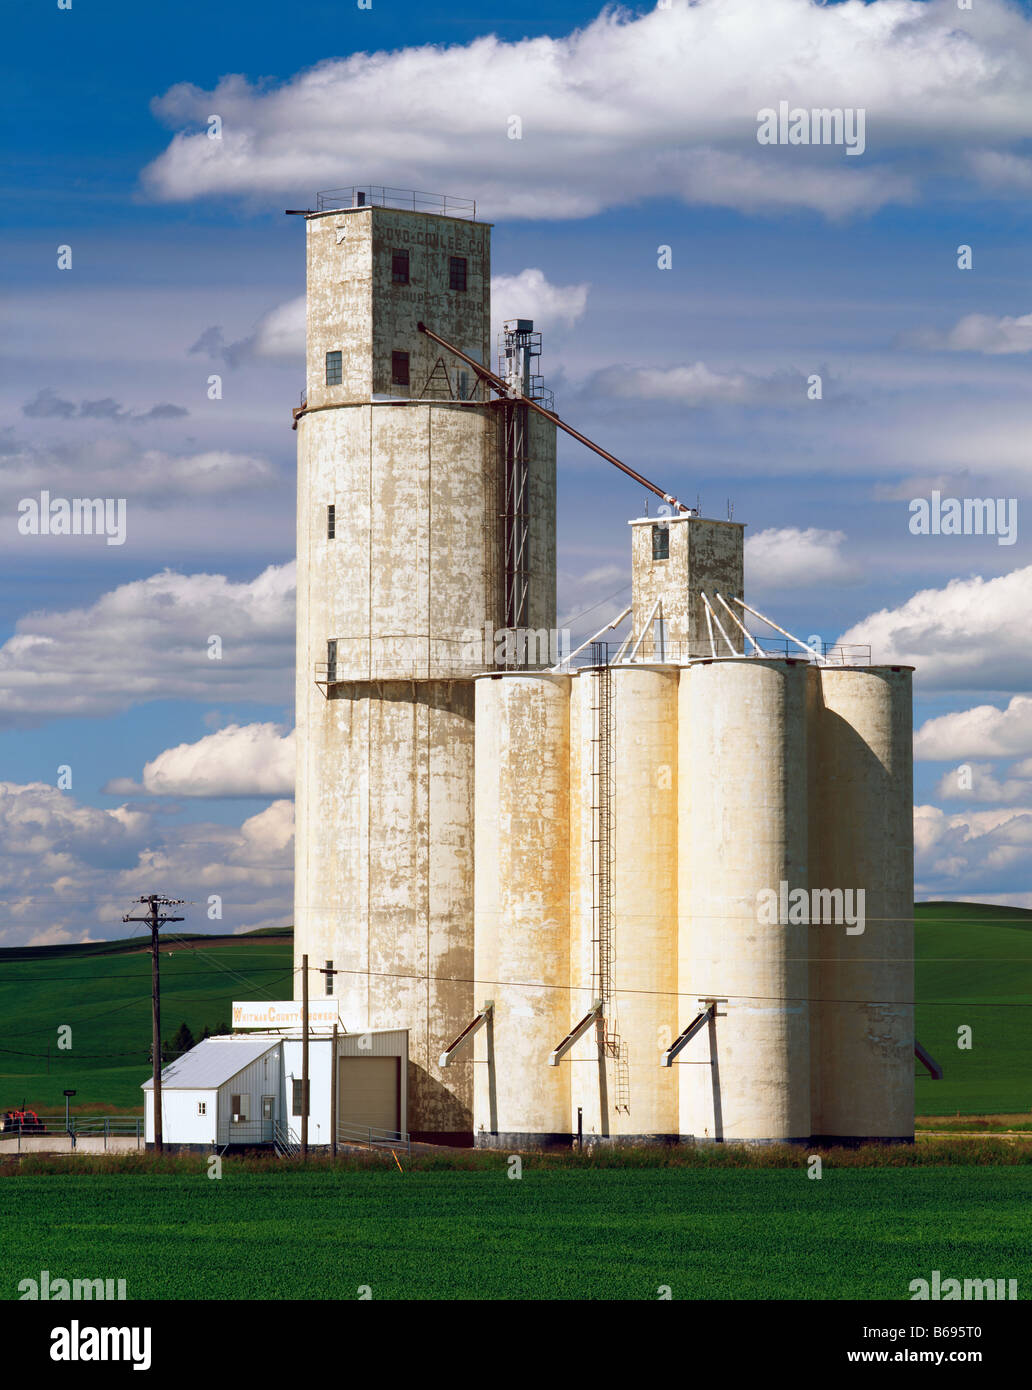 WASHINGTON - Grain silo in farm fields near the community of Steptoe in the Palouse region of Eastern Washington. Stock Photo